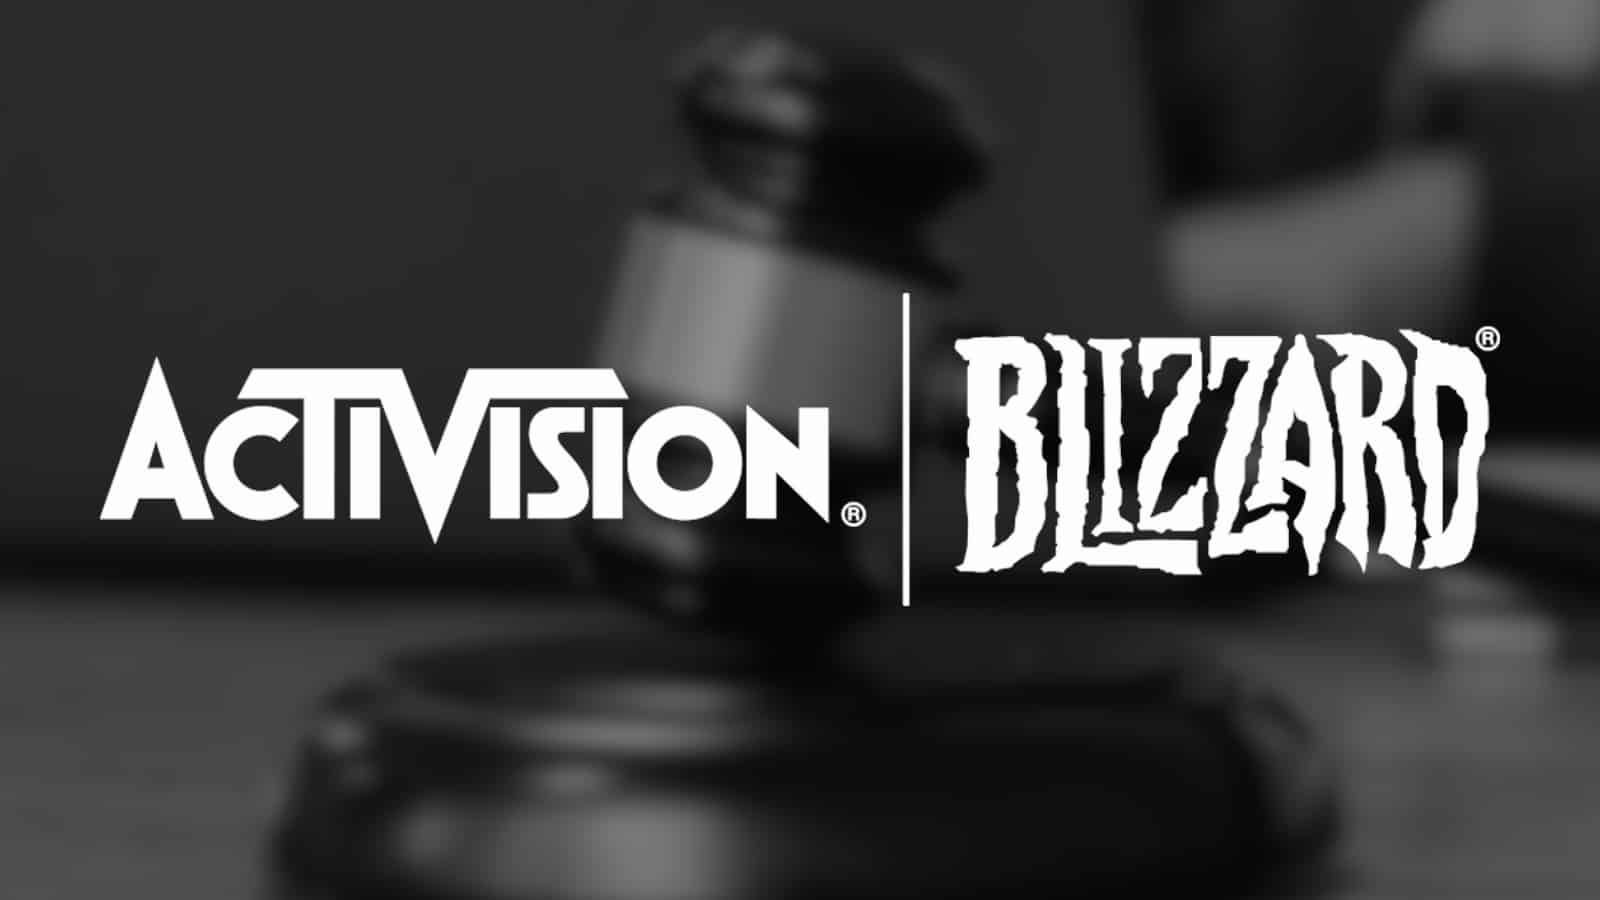 Activision Blizzard Game Awards 2021'e katılmayacak